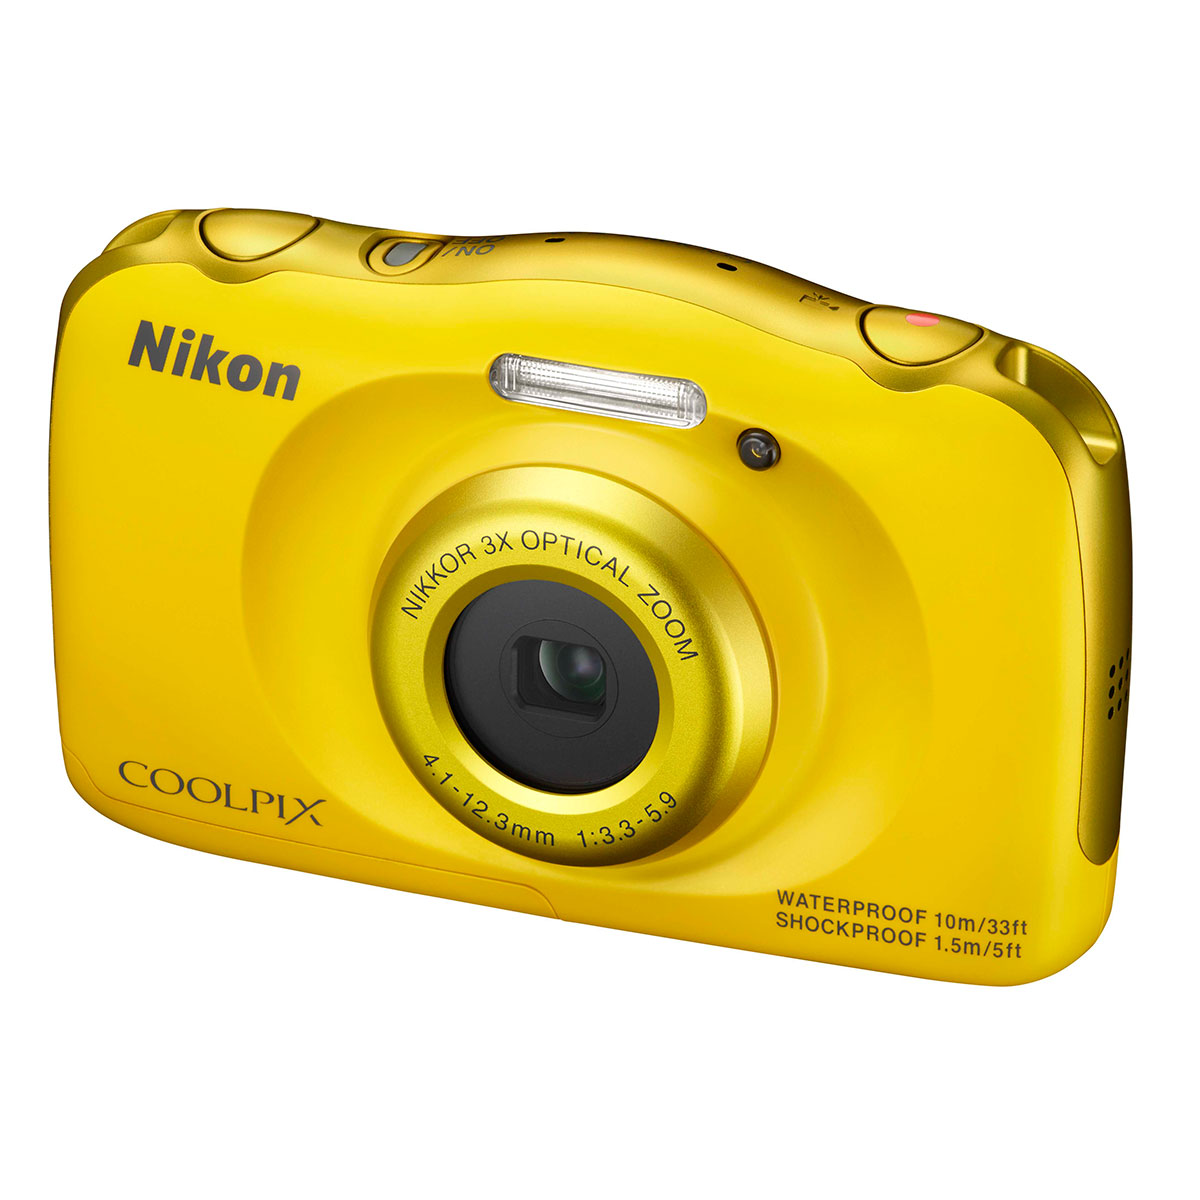 Nikon CoolPix S33 相機規格、價錢及介紹文- DCFever.com